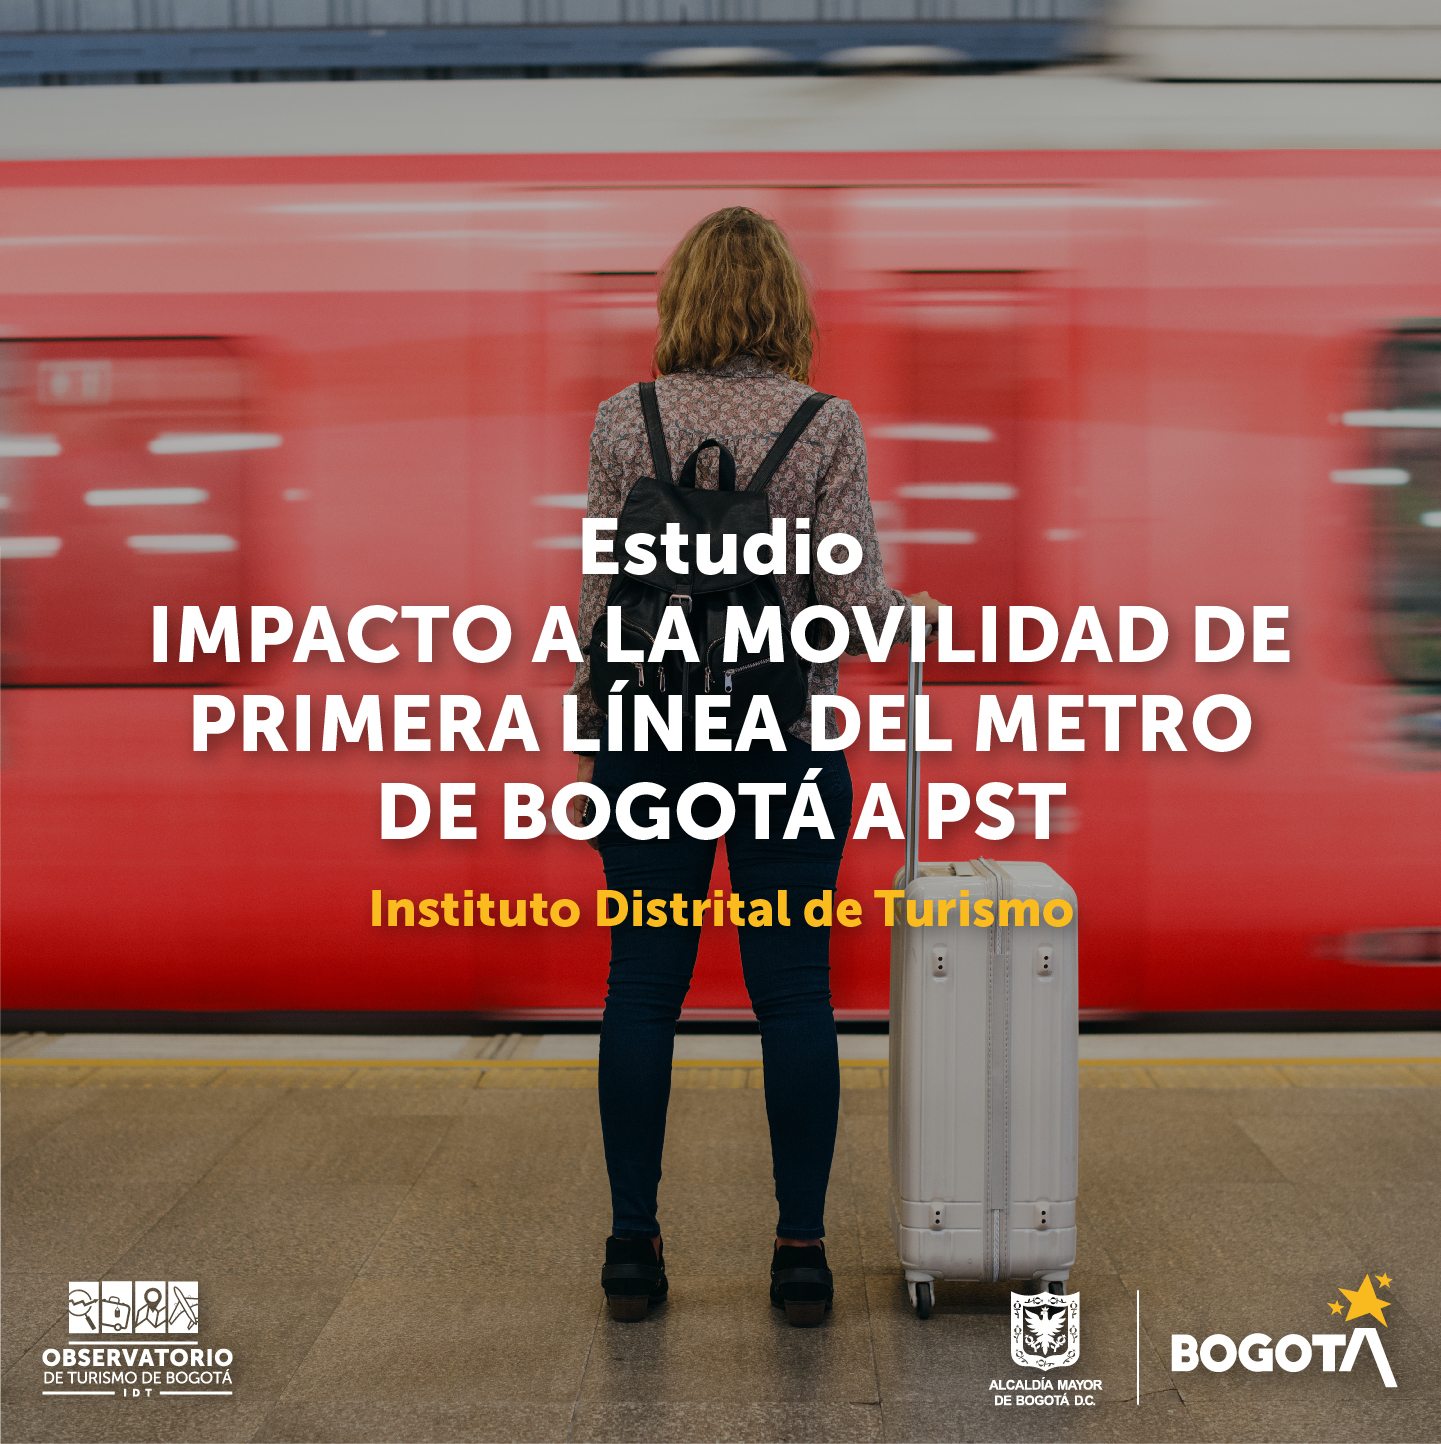 Imagen de mujer de espaldas y en frente de ella un tren en movimiento. Con el título: Estudio Impacto a la movilidad de primera línea del metro de Bogotá a PST